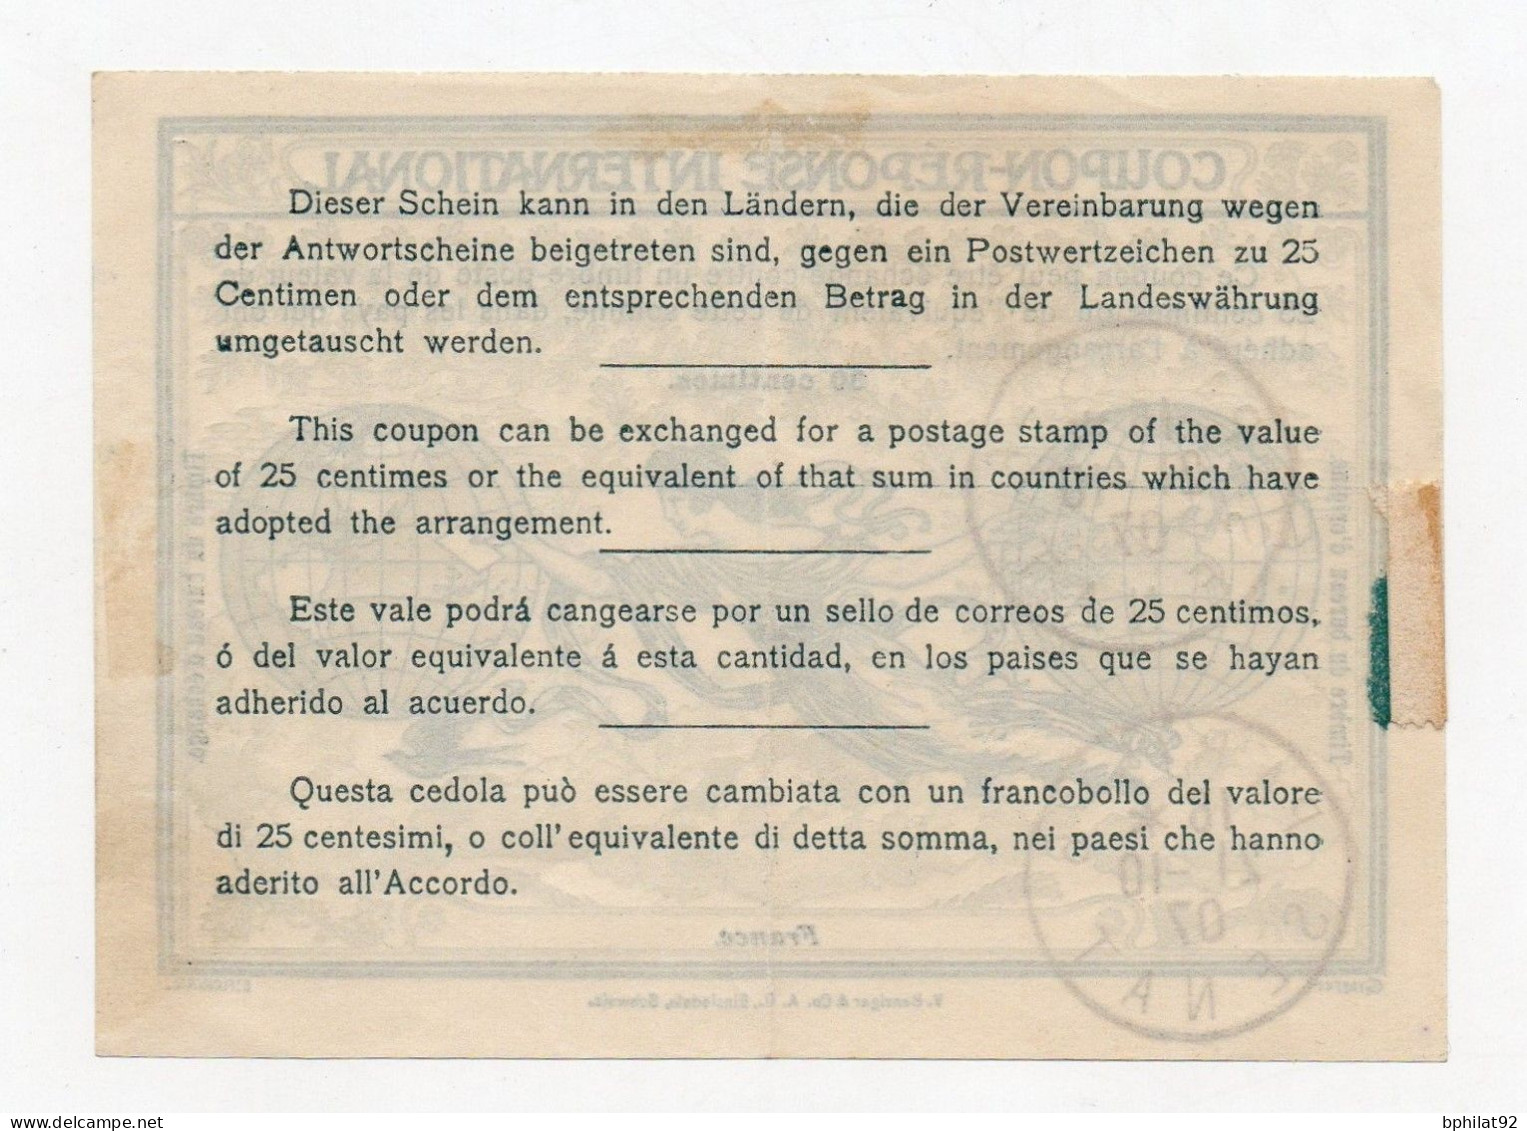 !!! COUPON REPONSE INTERNATIONAL OBLIT PARIS - SENAT DU 21/10/1907 (CREES LE 1/10/1907) - Coupons-réponse